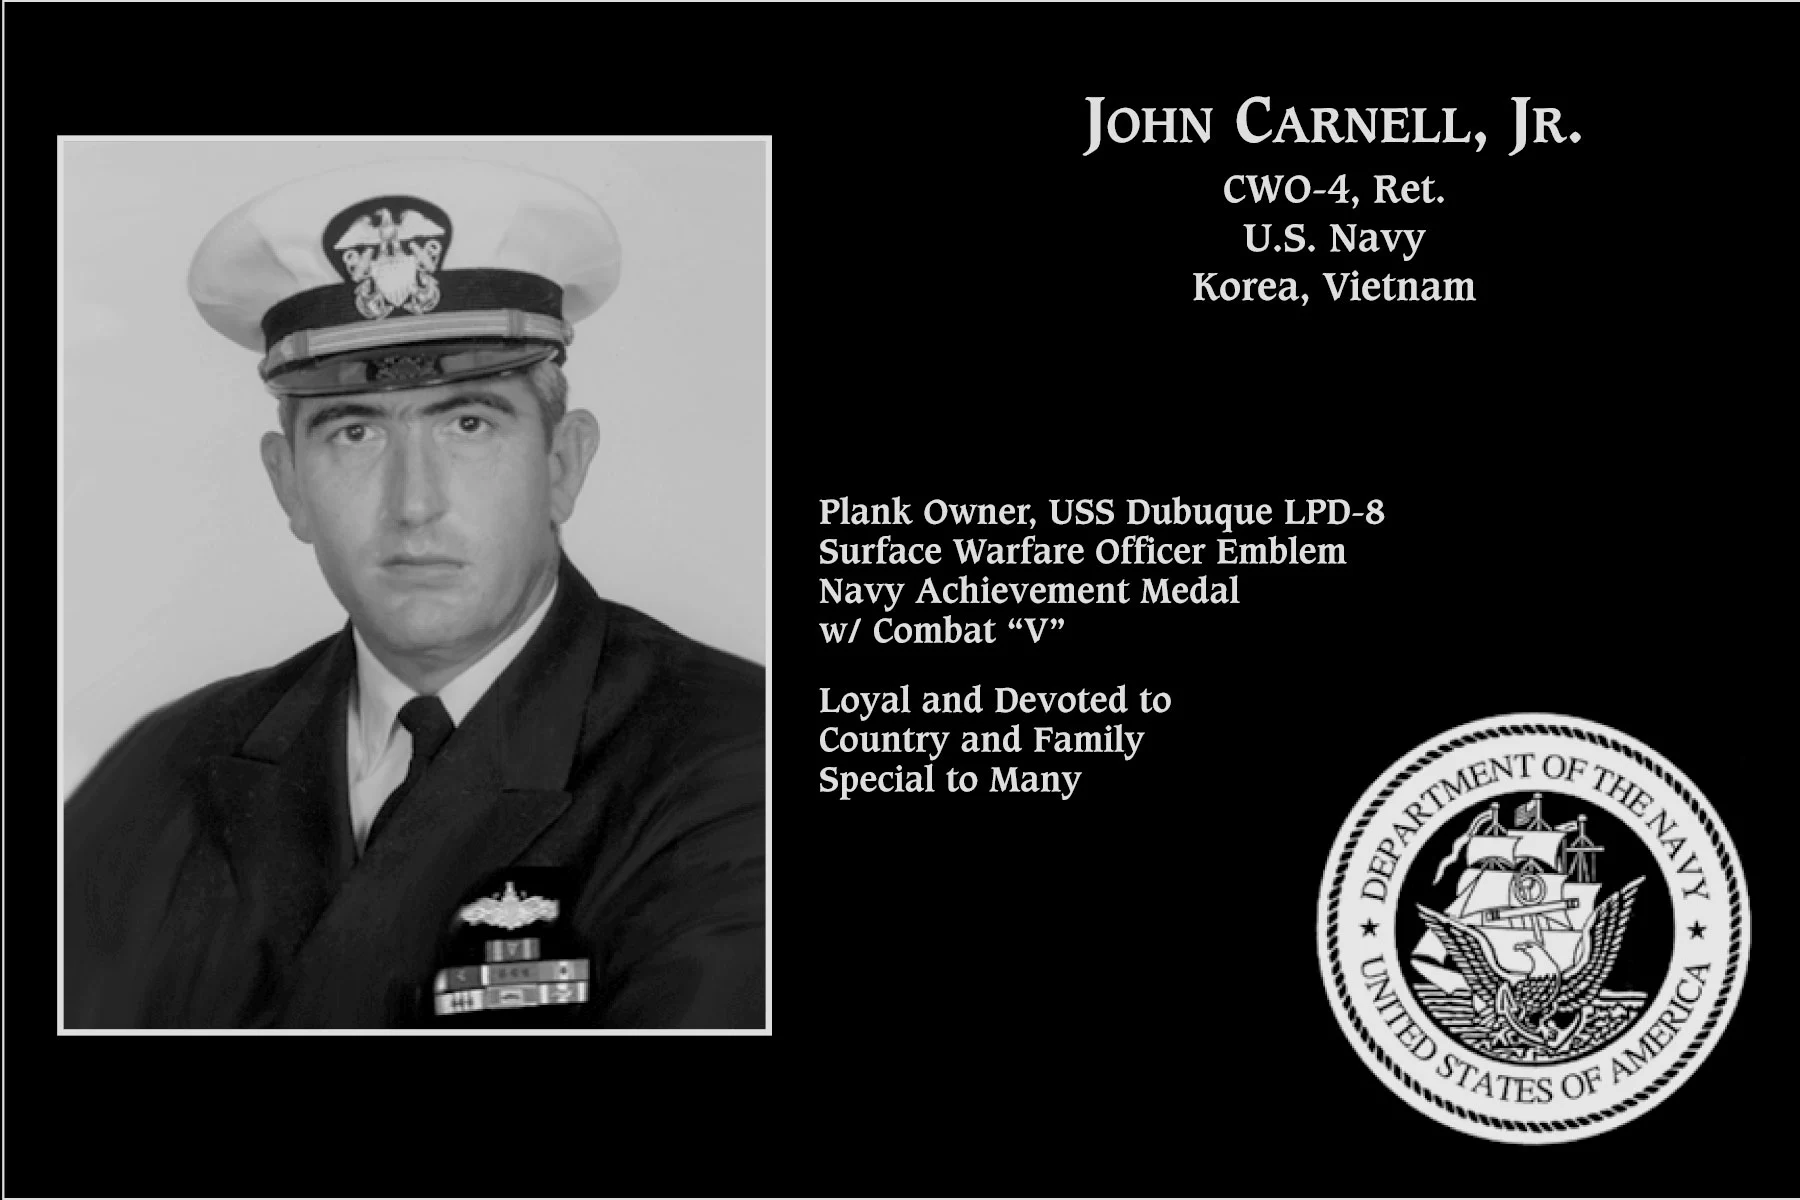 John Carnell, jr